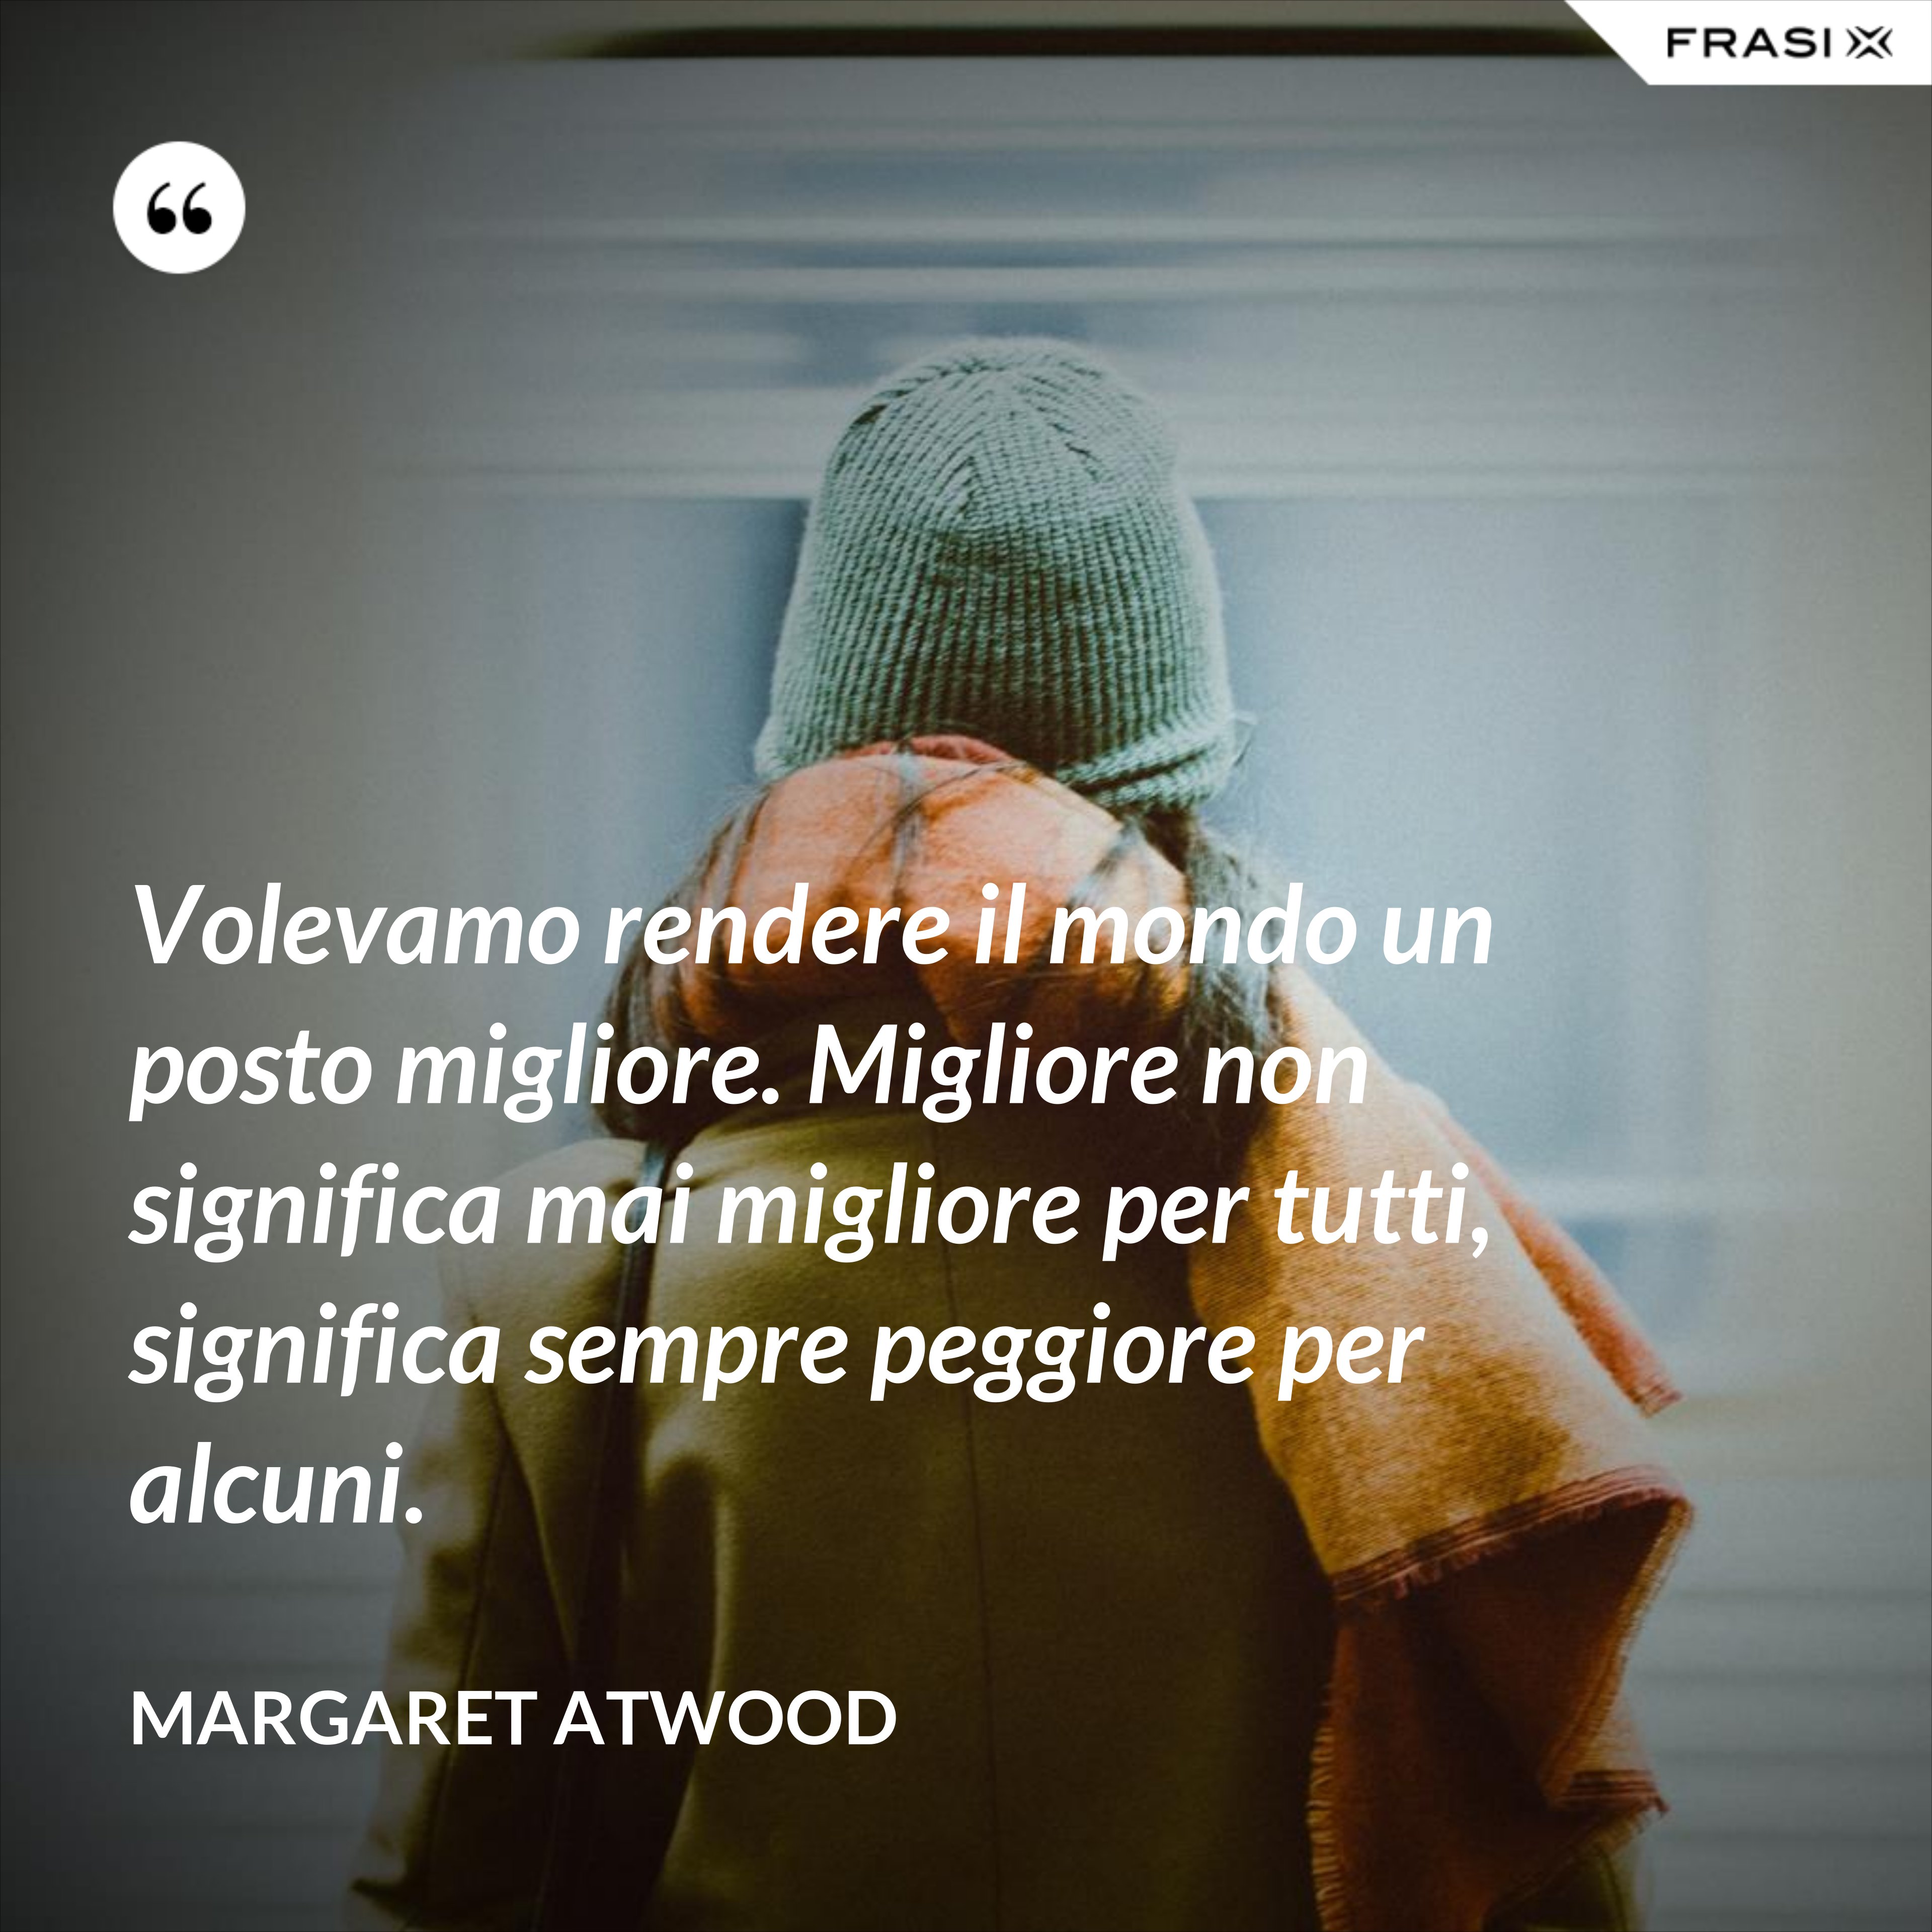 Volevamo rendere il mondo un posto migliore. Migliore non significa mai migliore per tutti, significa sempre peggiore per alcuni. - Margaret Atwood